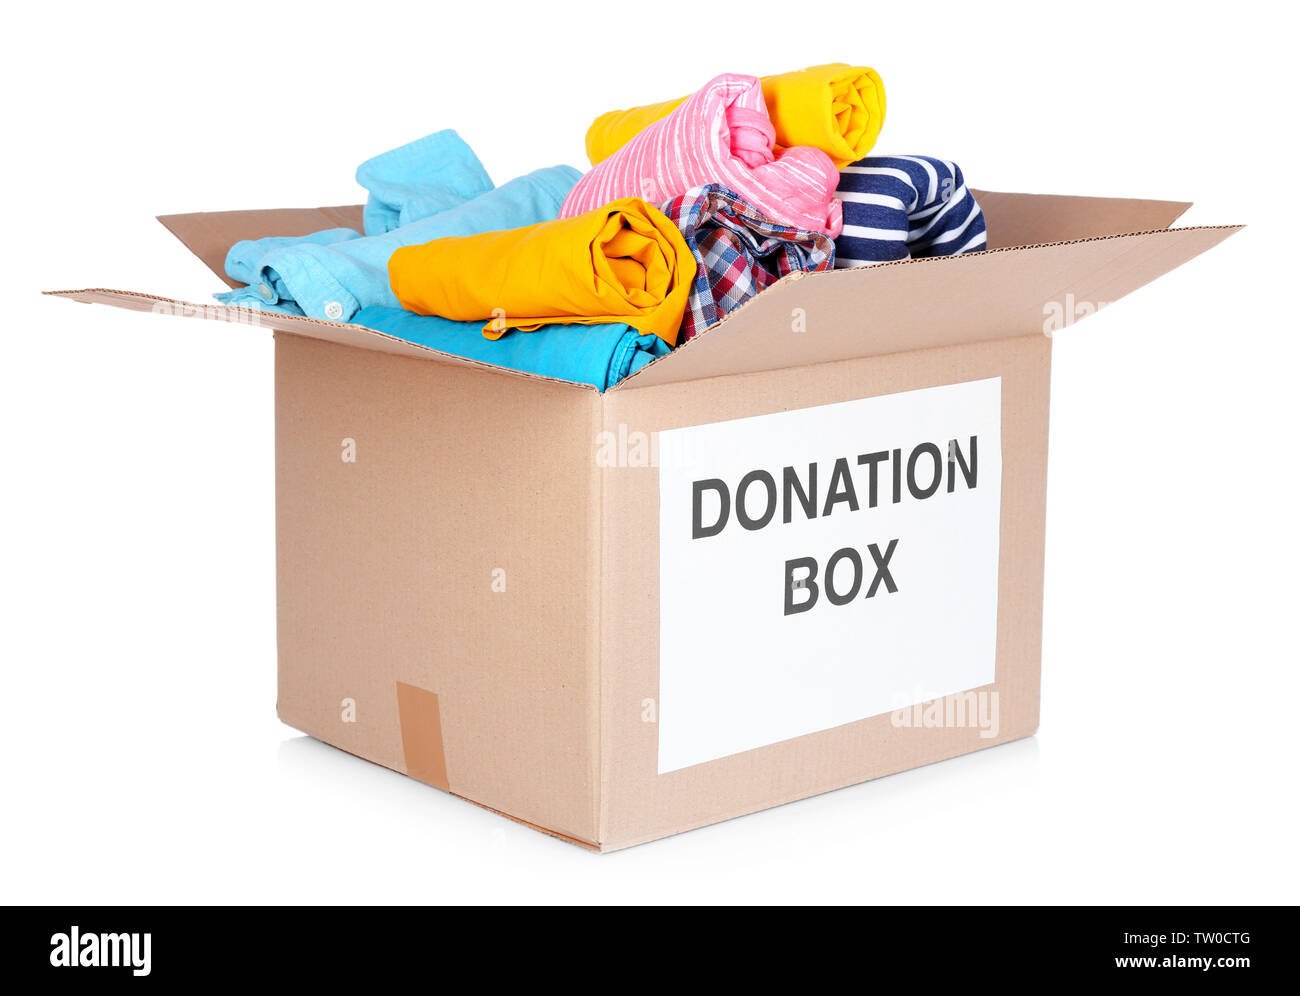 Donation box avec des vêtements isolated on white Banque D'Images